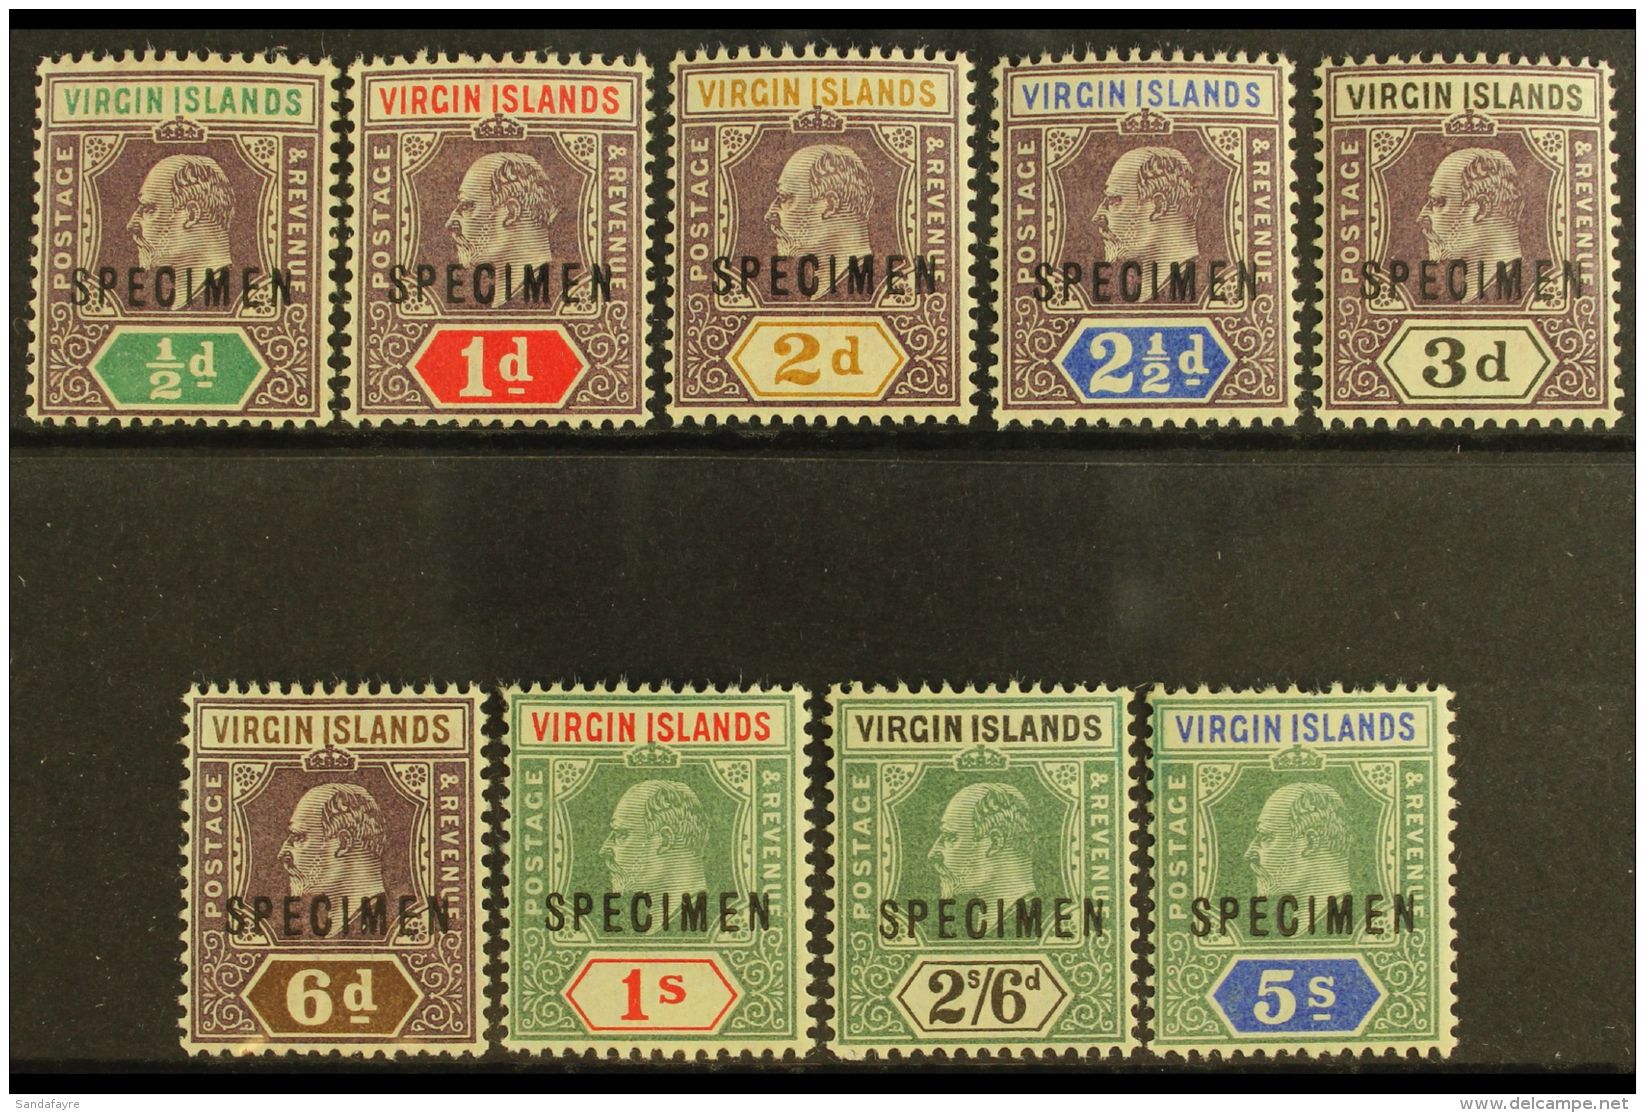 1904  Ed VII Set Wmk MCA, Ovptd "Specimen", SG 54s/62s, Fine Mint. (9 Stamps) For More Images, Please Visit... - Iles Vièrges Britanniques